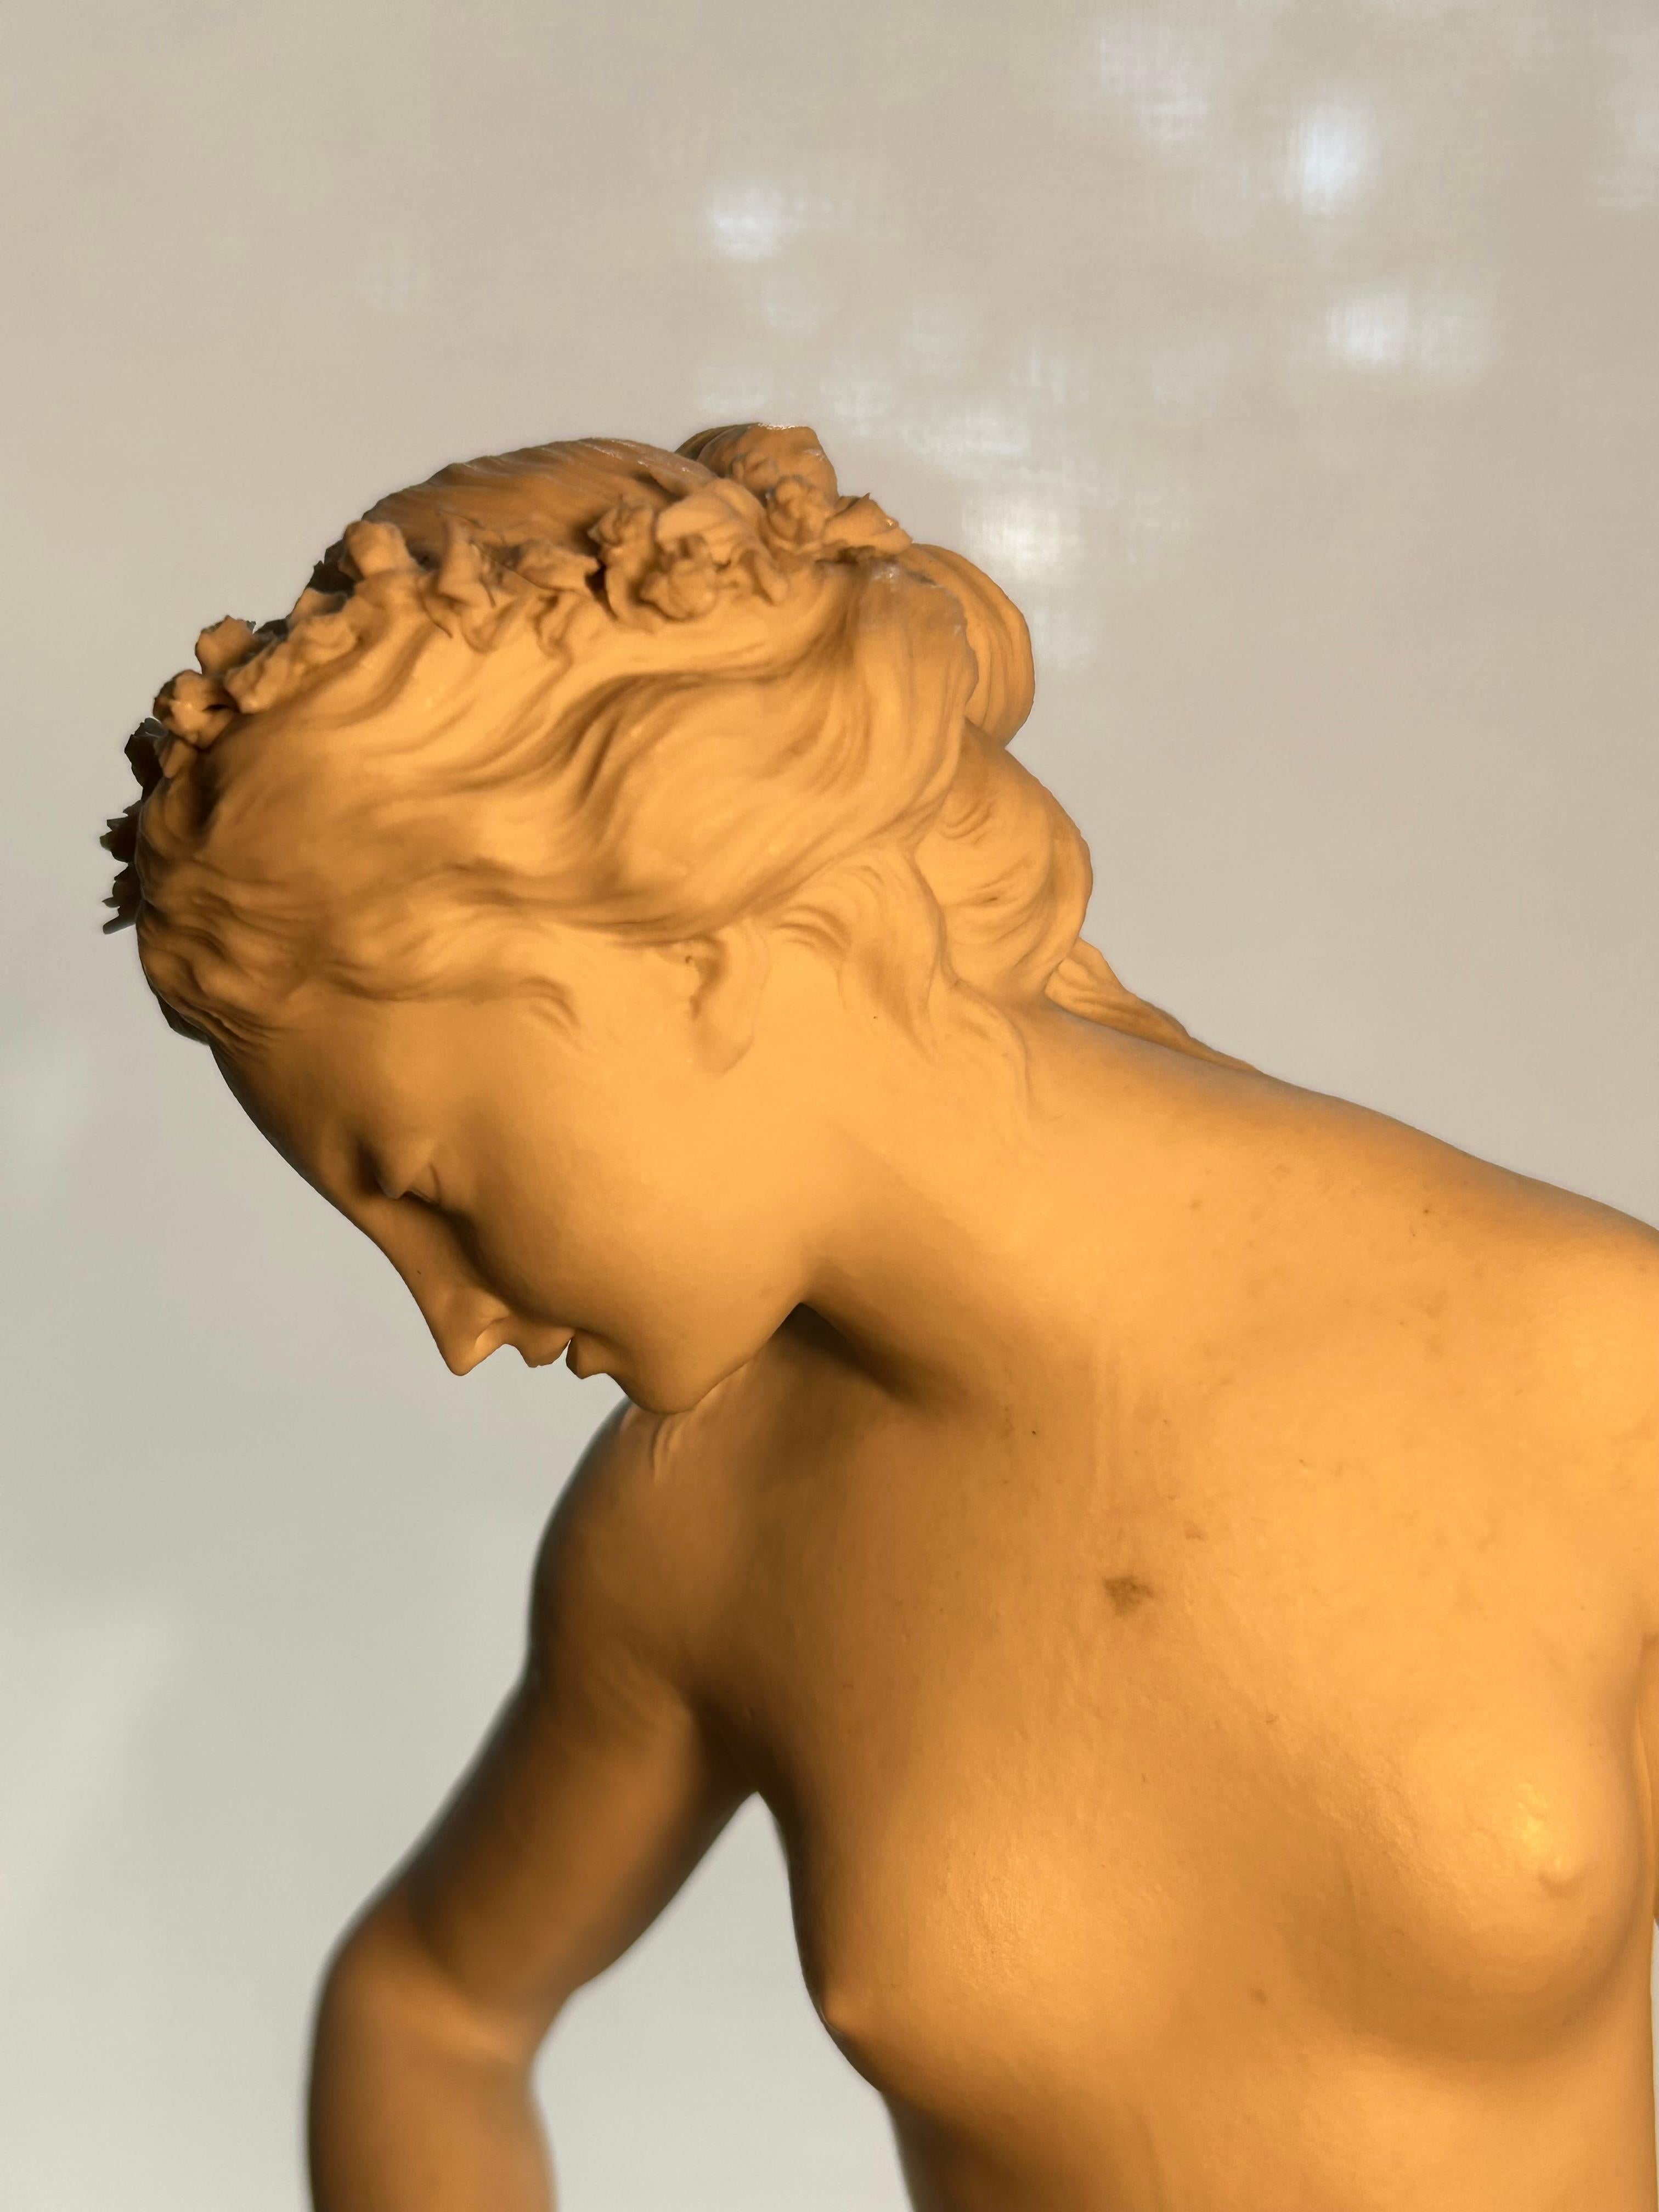 Une exquise figure de Vénus et Cupidon en porcelaine biscuit du milieu du XIXe siècle, française, avec une marque incisée d'épées croisées et un autre dispositif gravé sur la base.
Les photos ne rendent pas justice aux détails exquis de cette pièce,